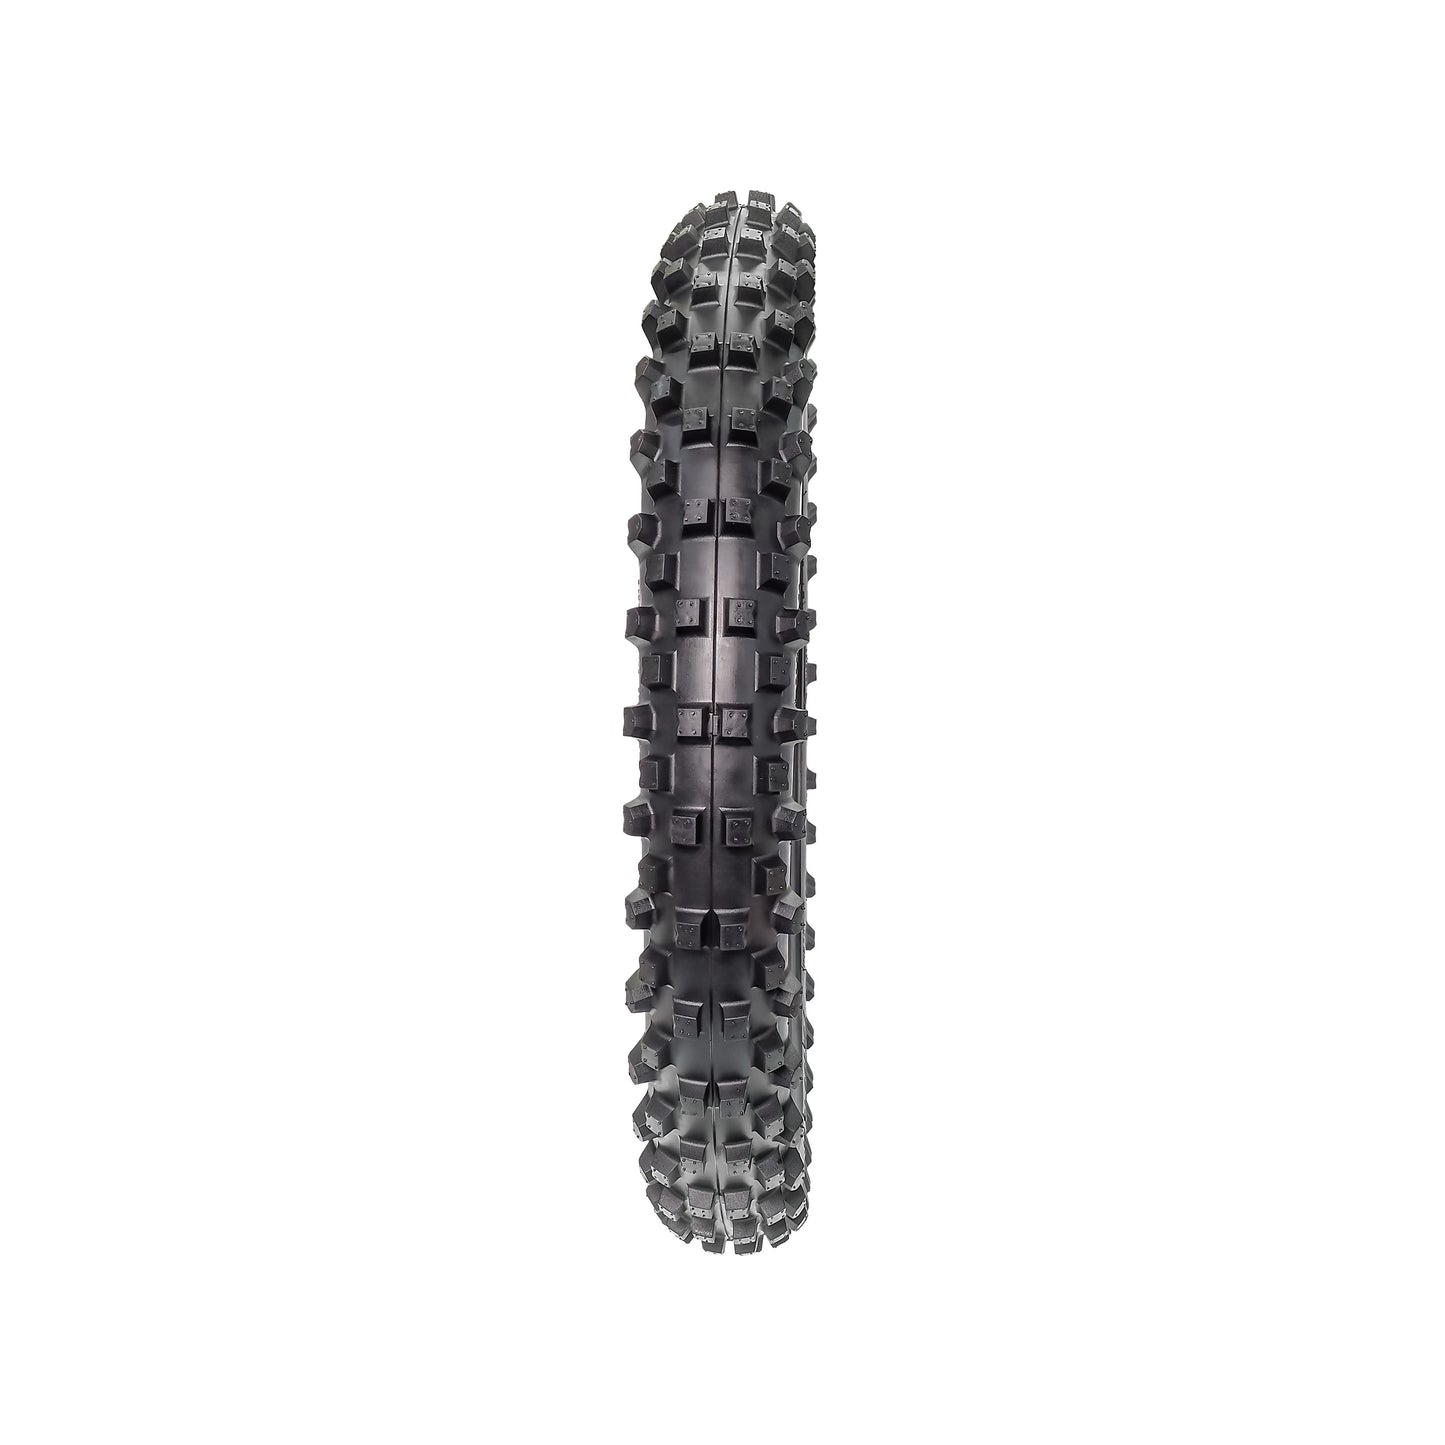 PIVOTRAX E-Bike Tire - Size: 70/100-19 Position: Front Compatible with: Surron, Talaria